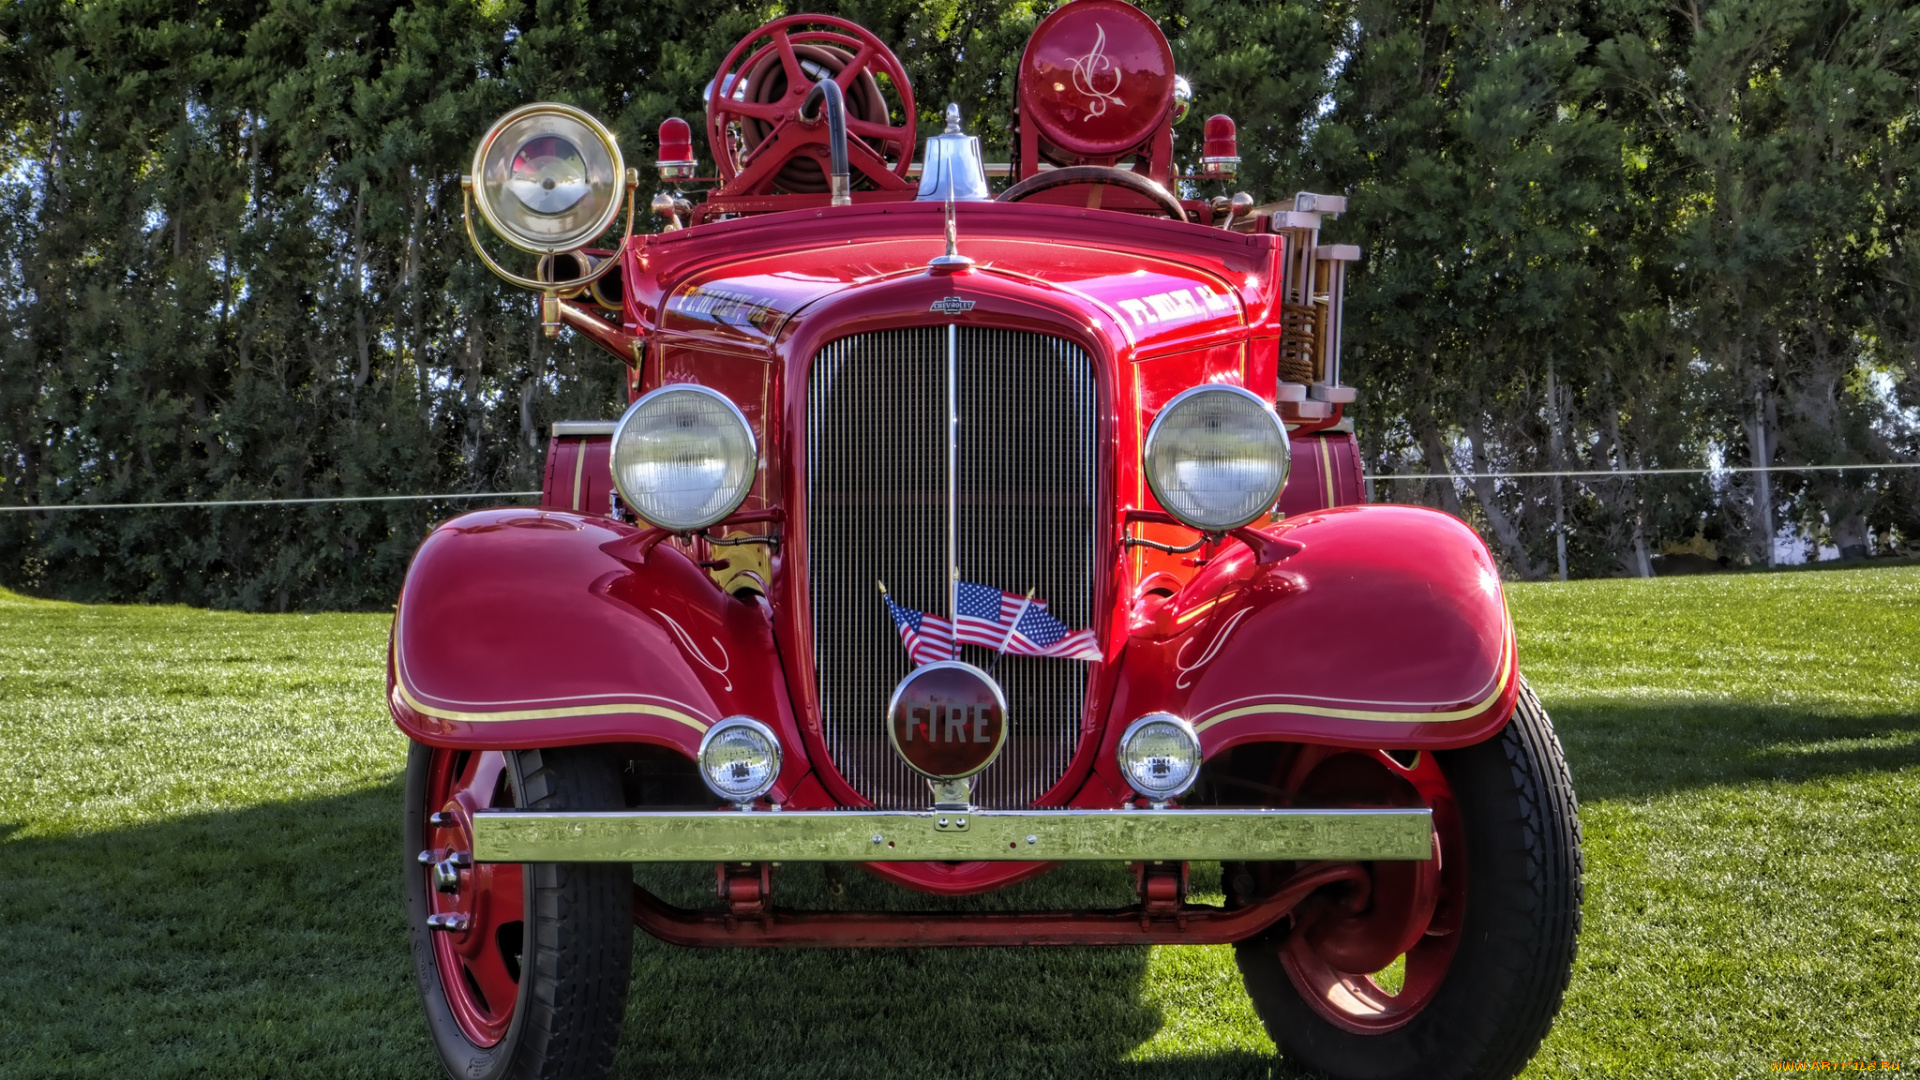 1934, howechevrolet, fire, truck, автомобили, пожарные, машины, автошоу, выставка